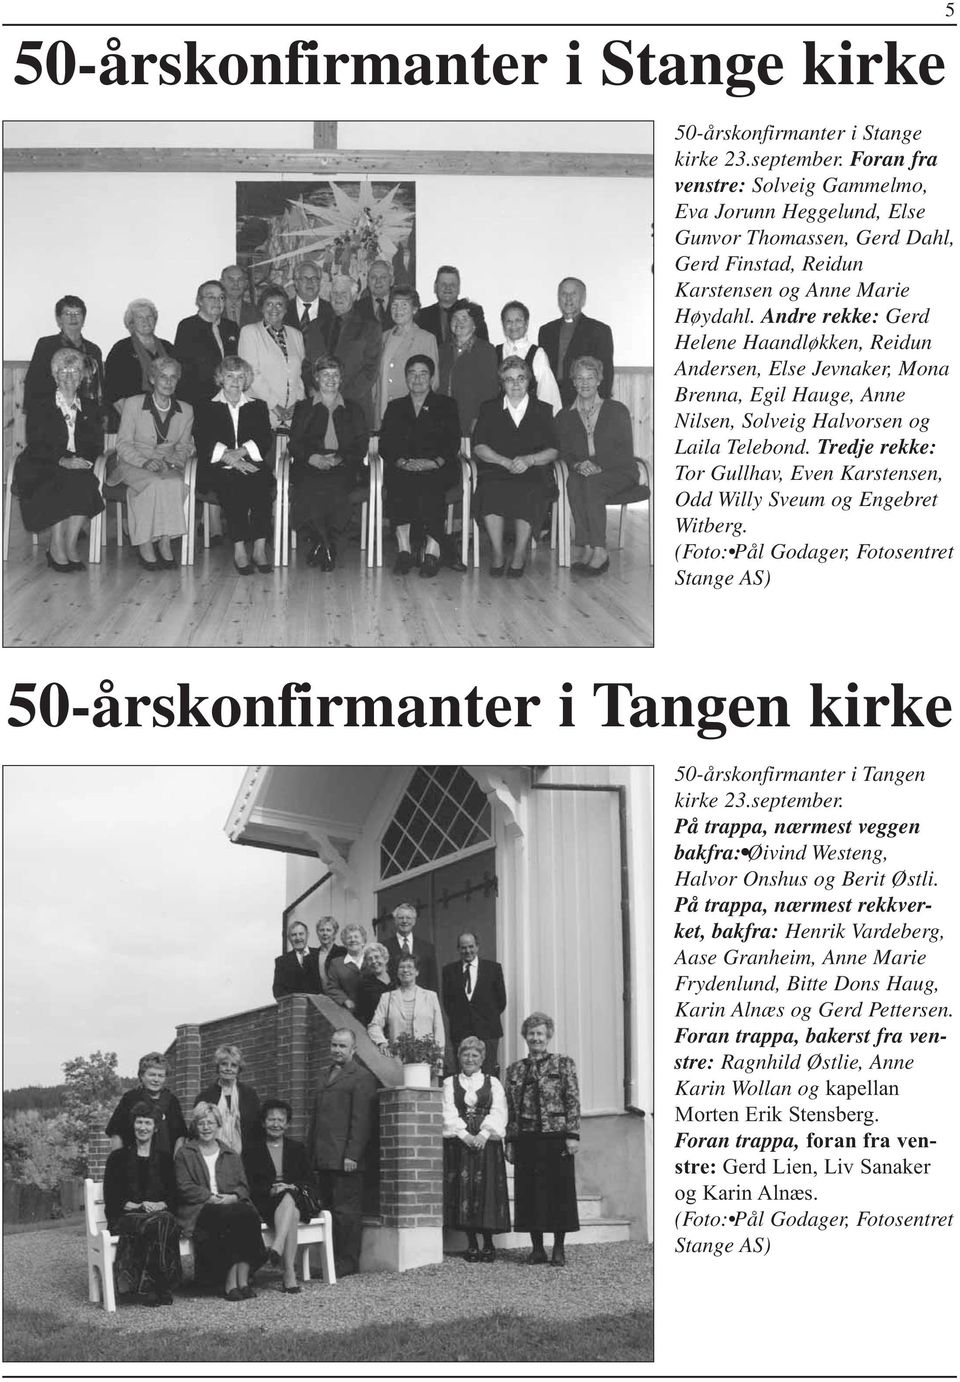 Andre rekke: Gerd Helene Haandløkken, Reidun Andersen, Else Jevnaker, Mona Brenna, Egil Hauge, Anne Nilsen, Solveig Halvorsen og Laila Telebond.